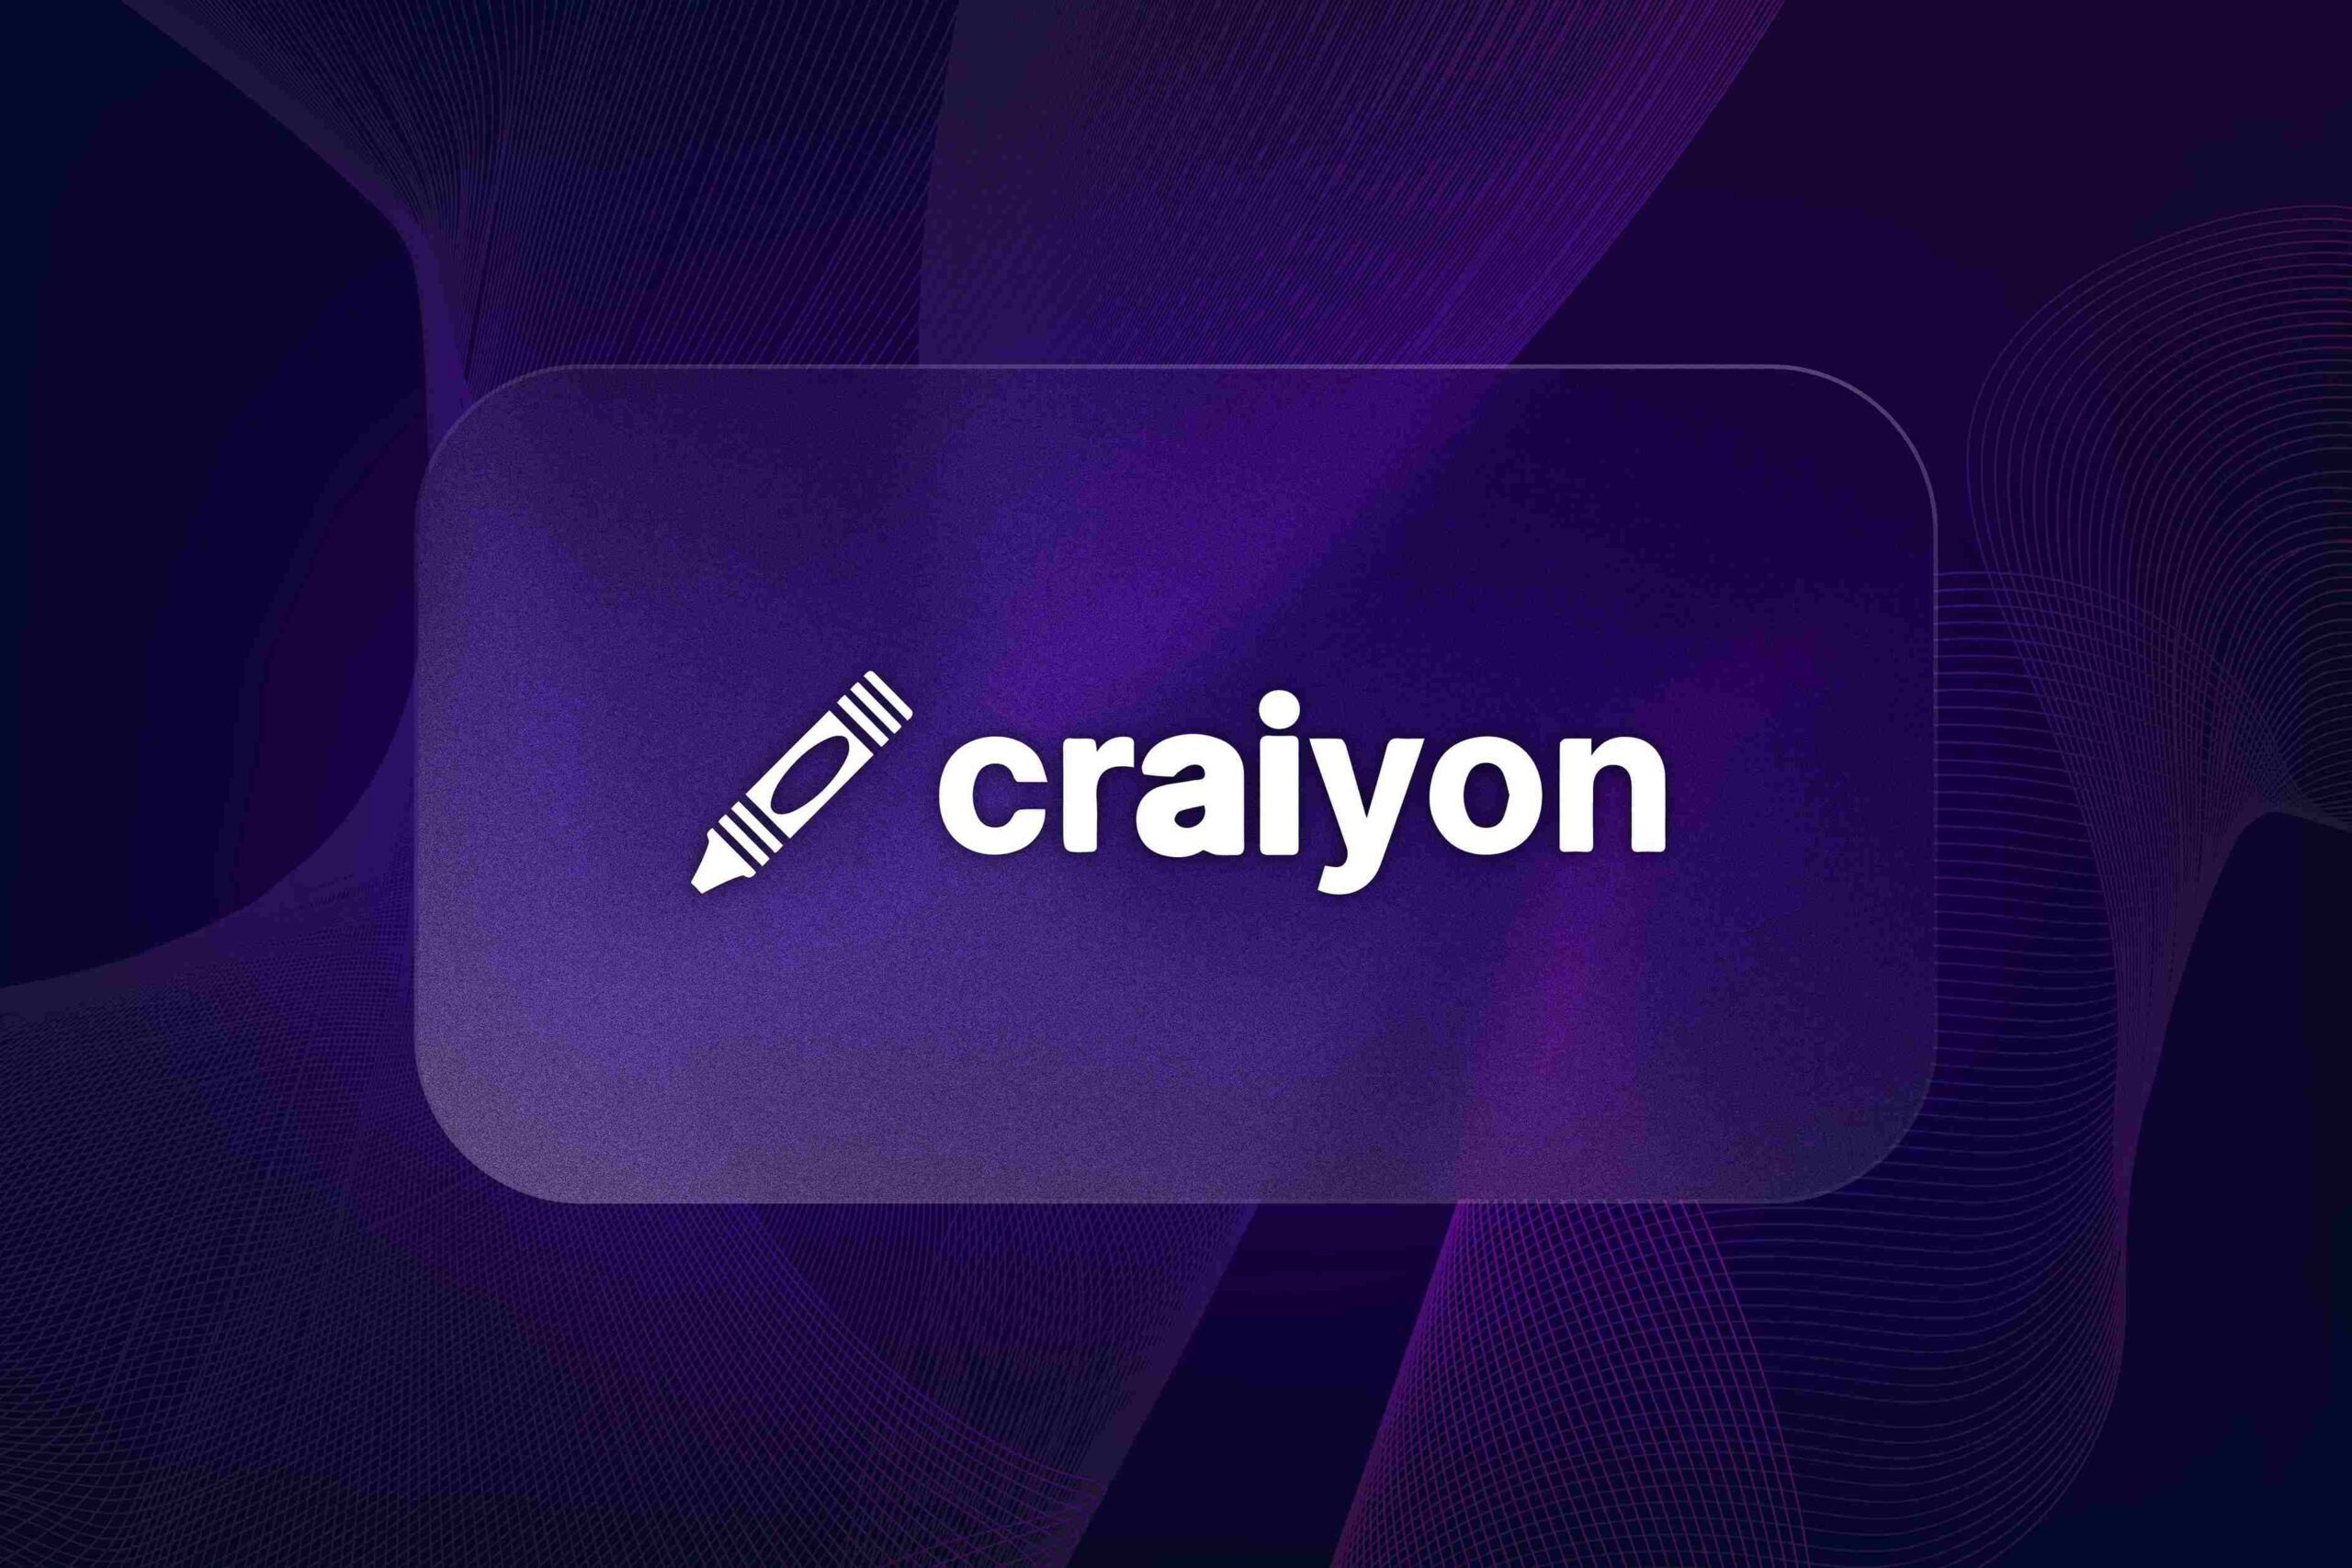 Craiyon